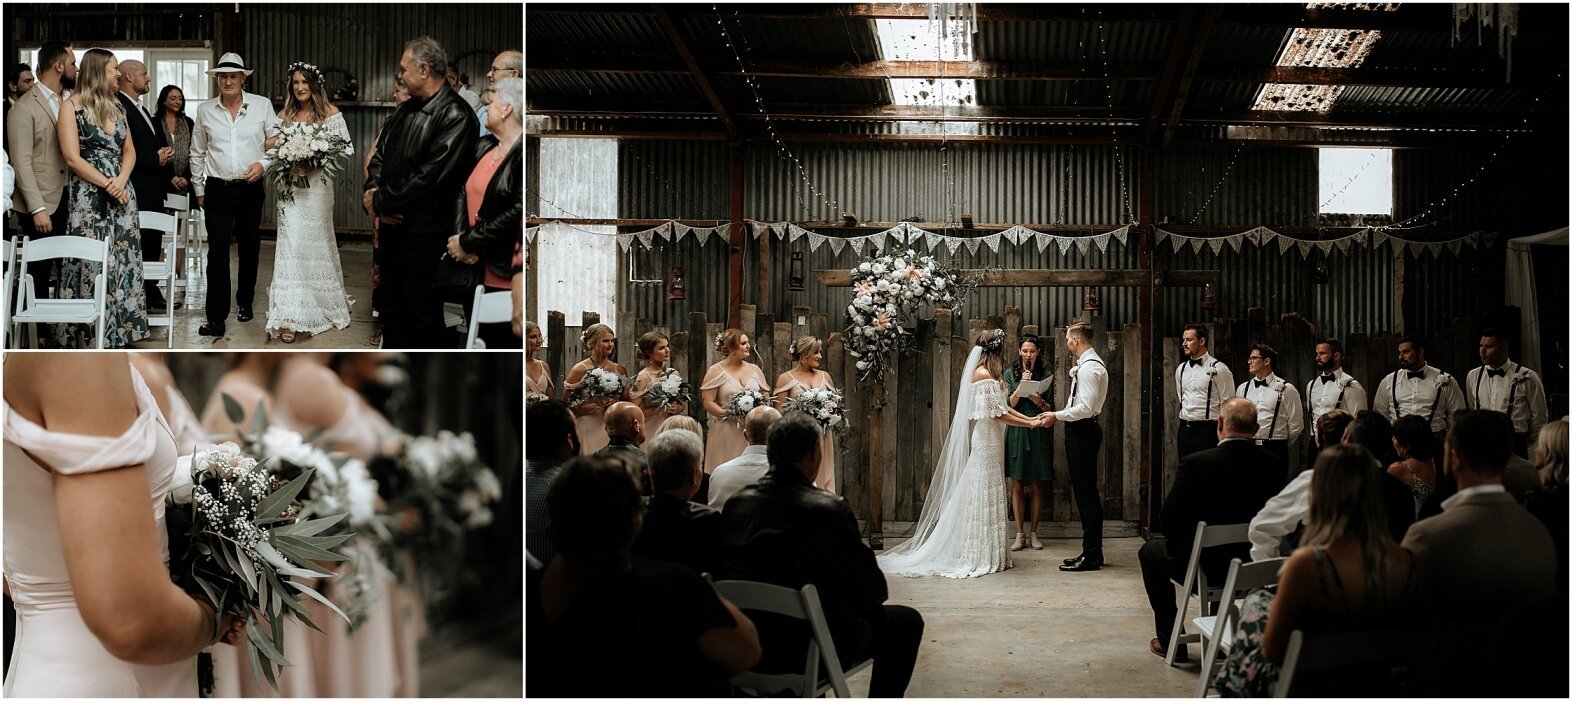 Zanda+Auckland+wedding+photographer+boho+vintage+lace+retro+The+barn+Waimauku+venue+New+Zealand_29.jpeg